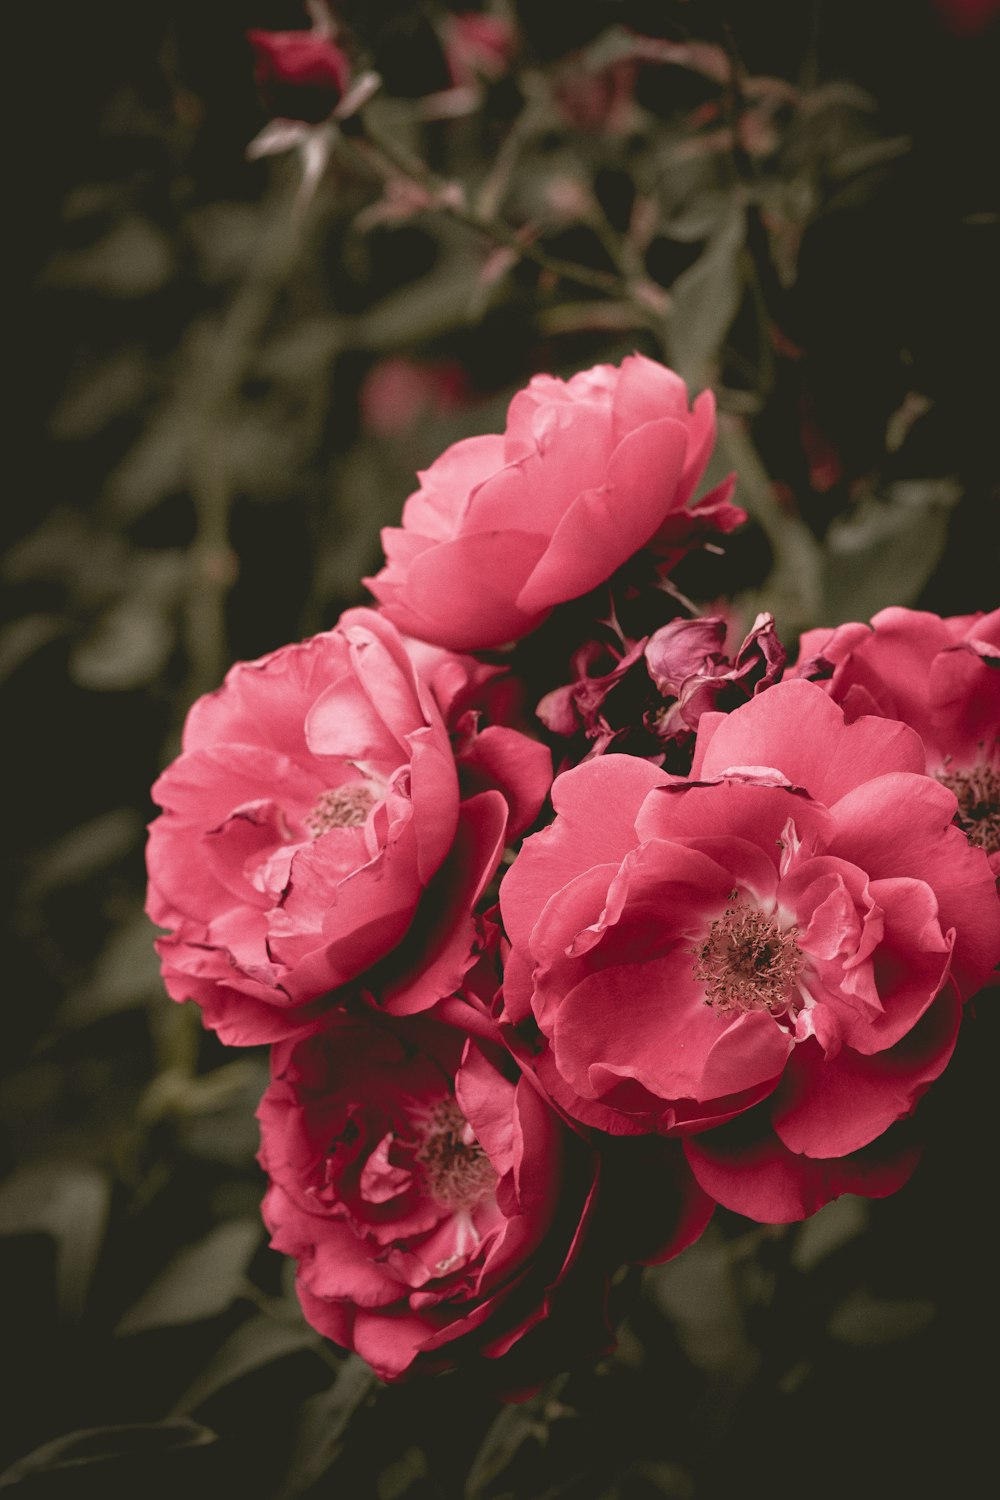 Photographie de mise au point de fleurs aux pétales roses